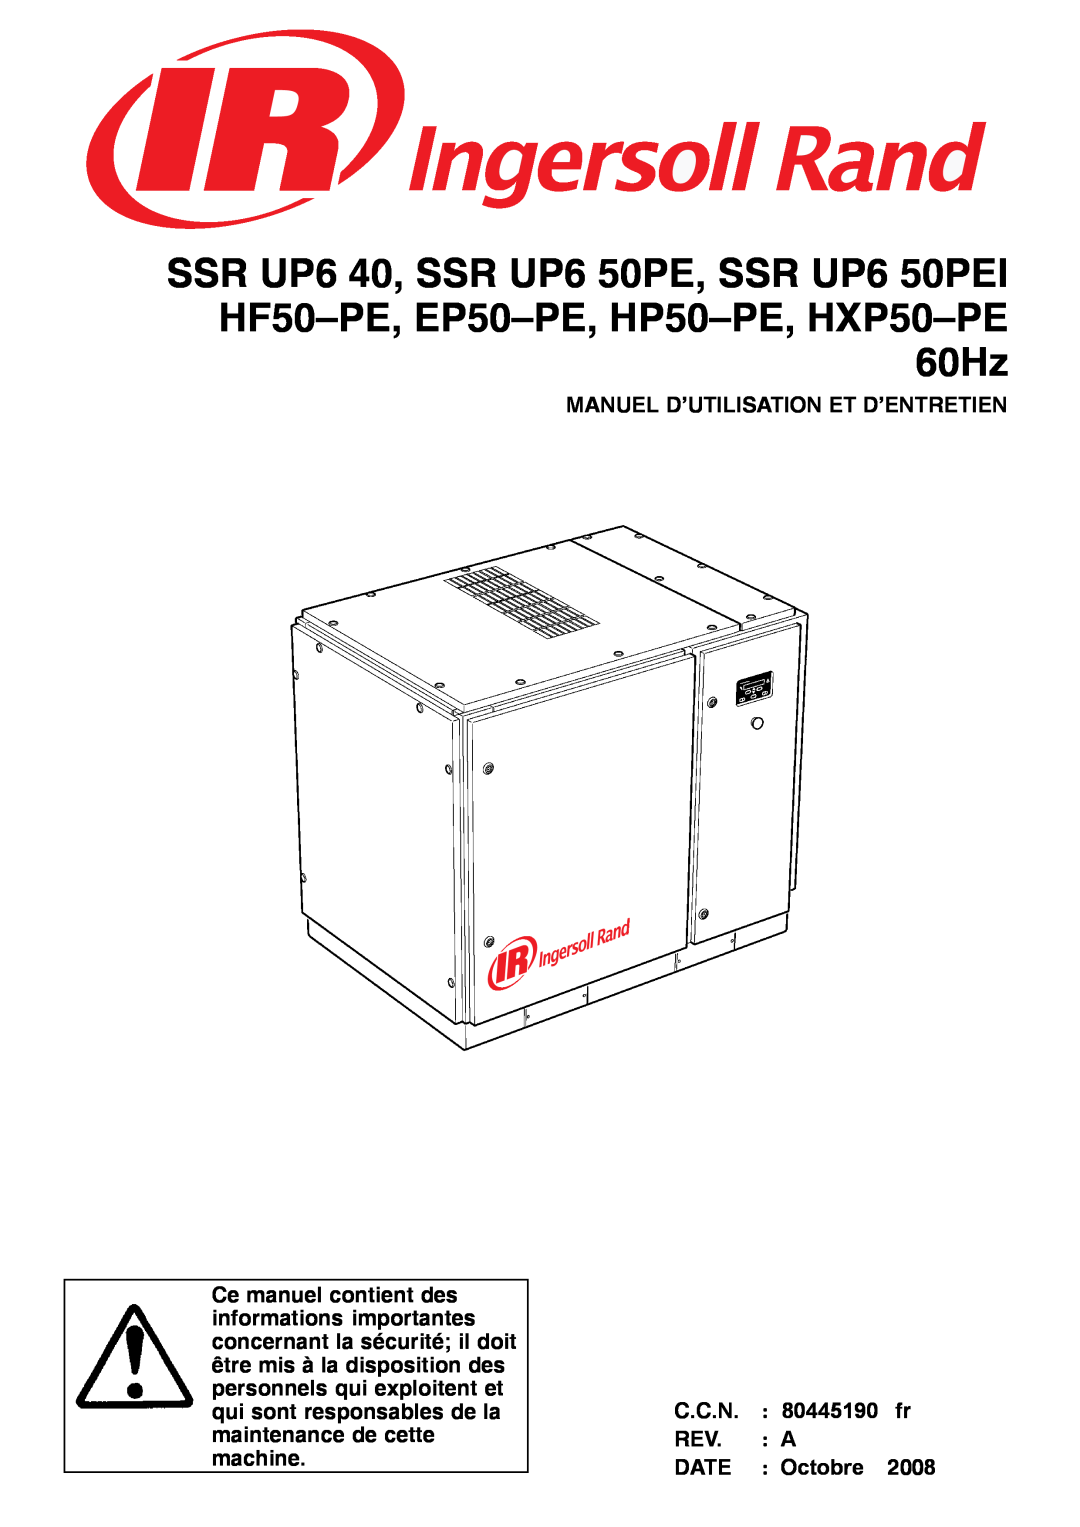 Ingersoll-Rand SSR UP6 50PE, SSR UP6 40, EP50-PE Manuel D’Utilisation Et D’Entretien, Octobre, C.C.N, Date, 2008, 80445190 